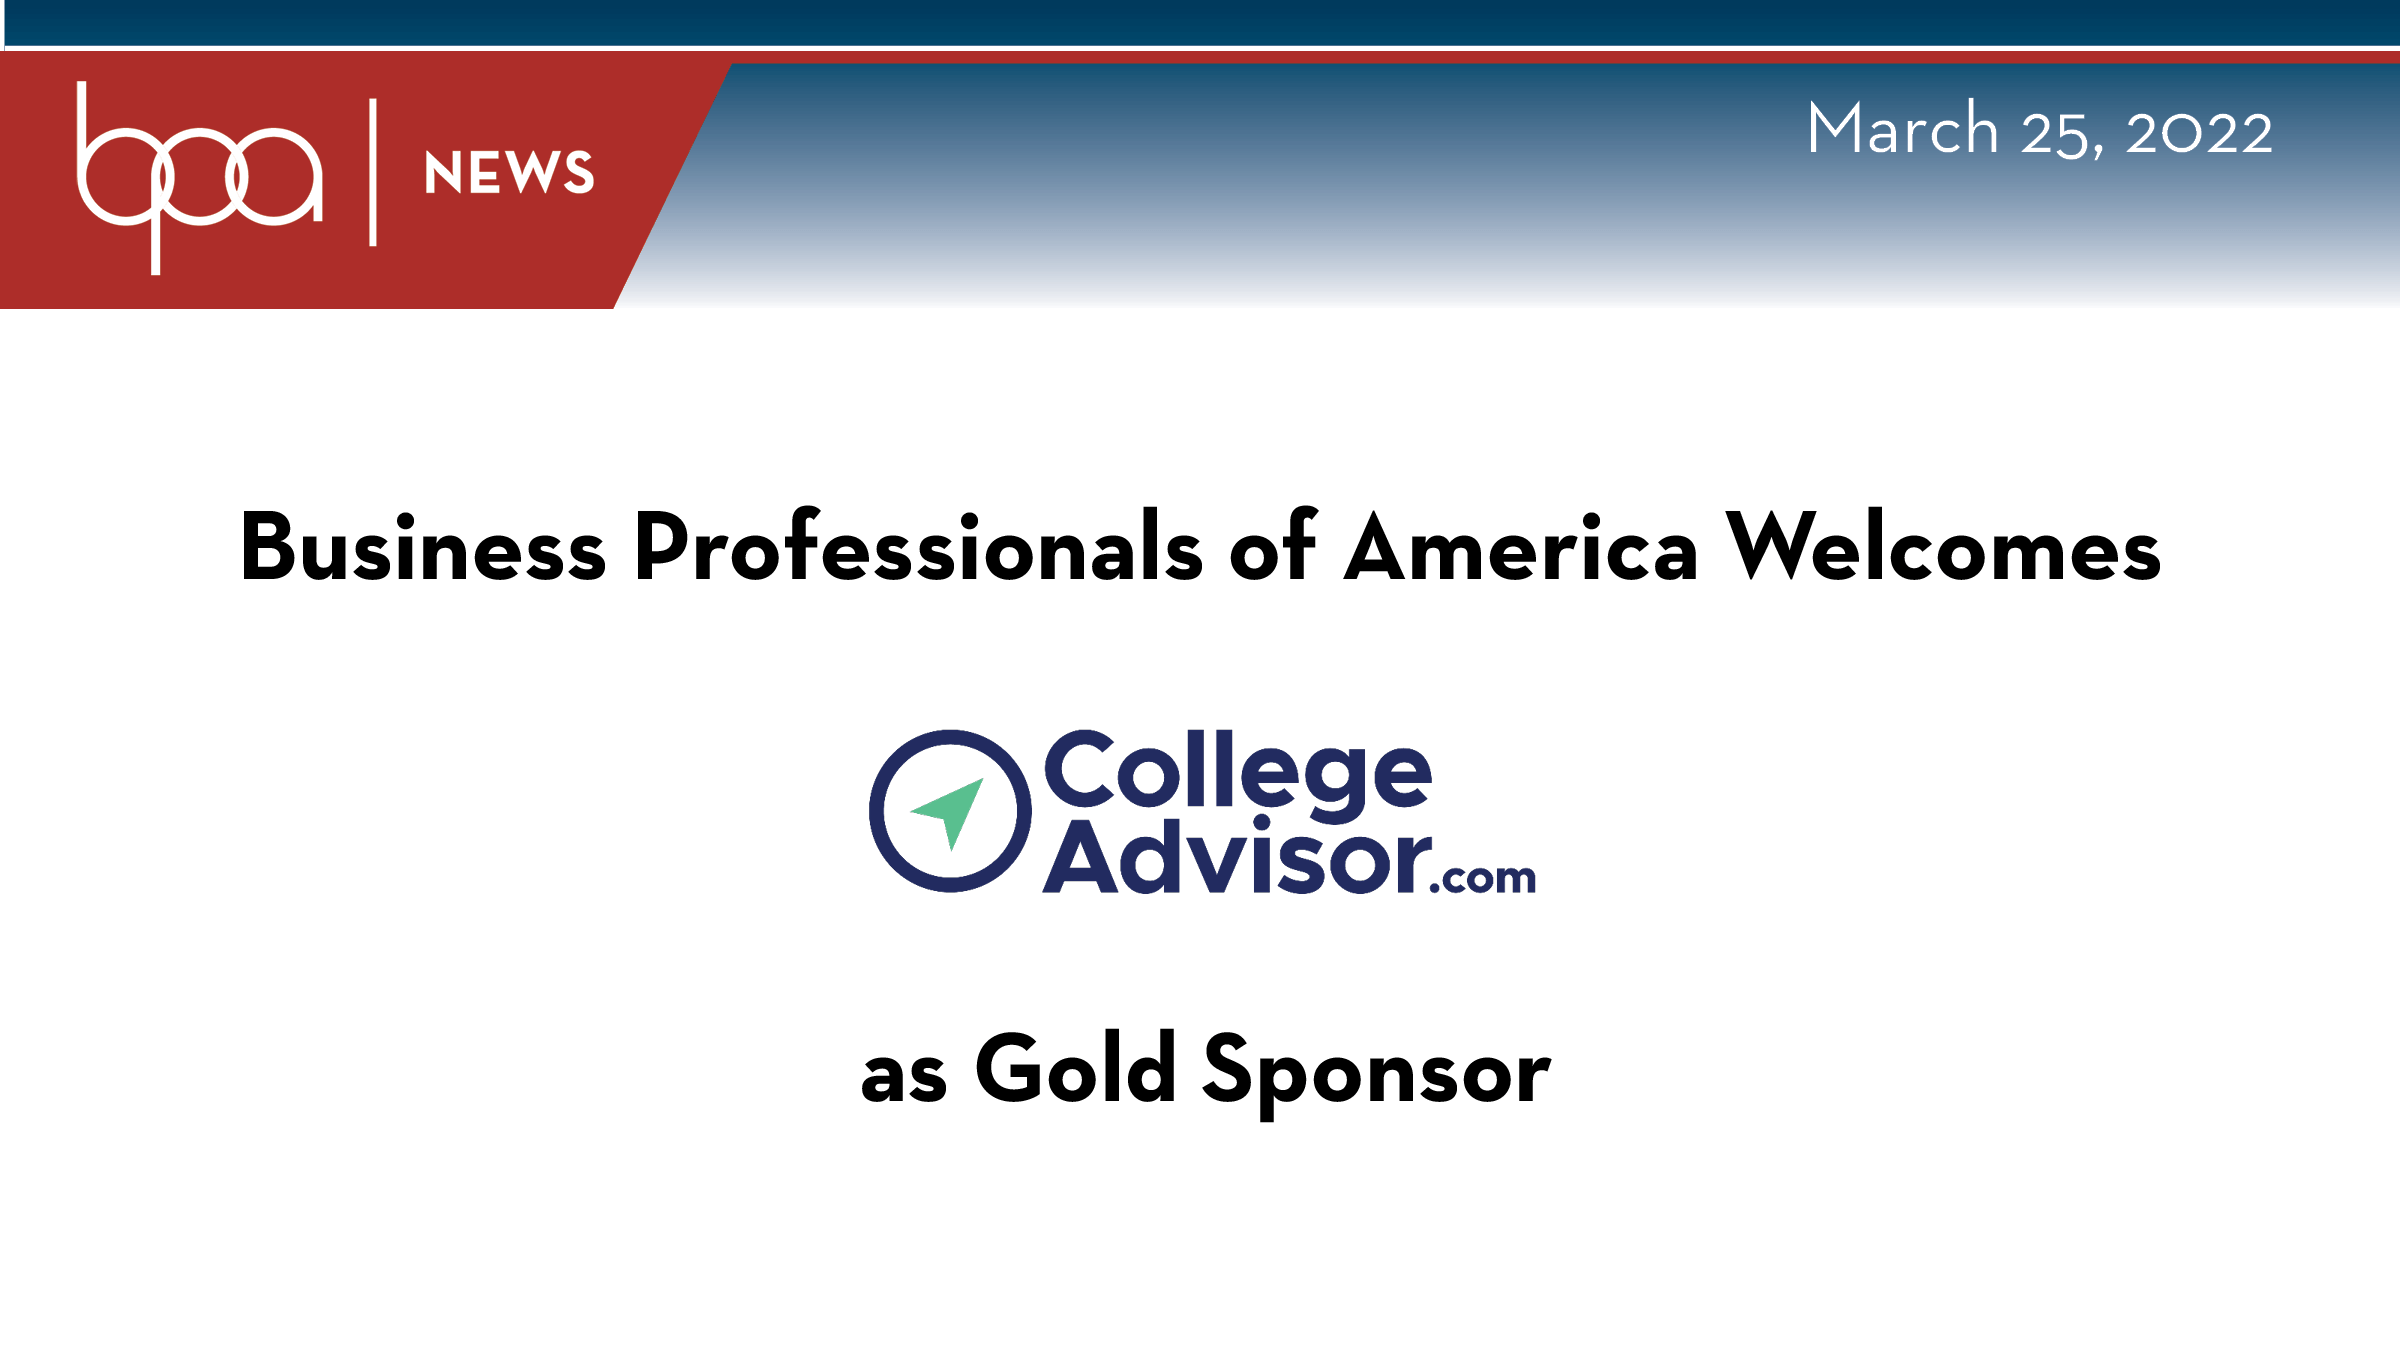 BPA Welcomes CollegeAdvisor.com as Gold Sponsor